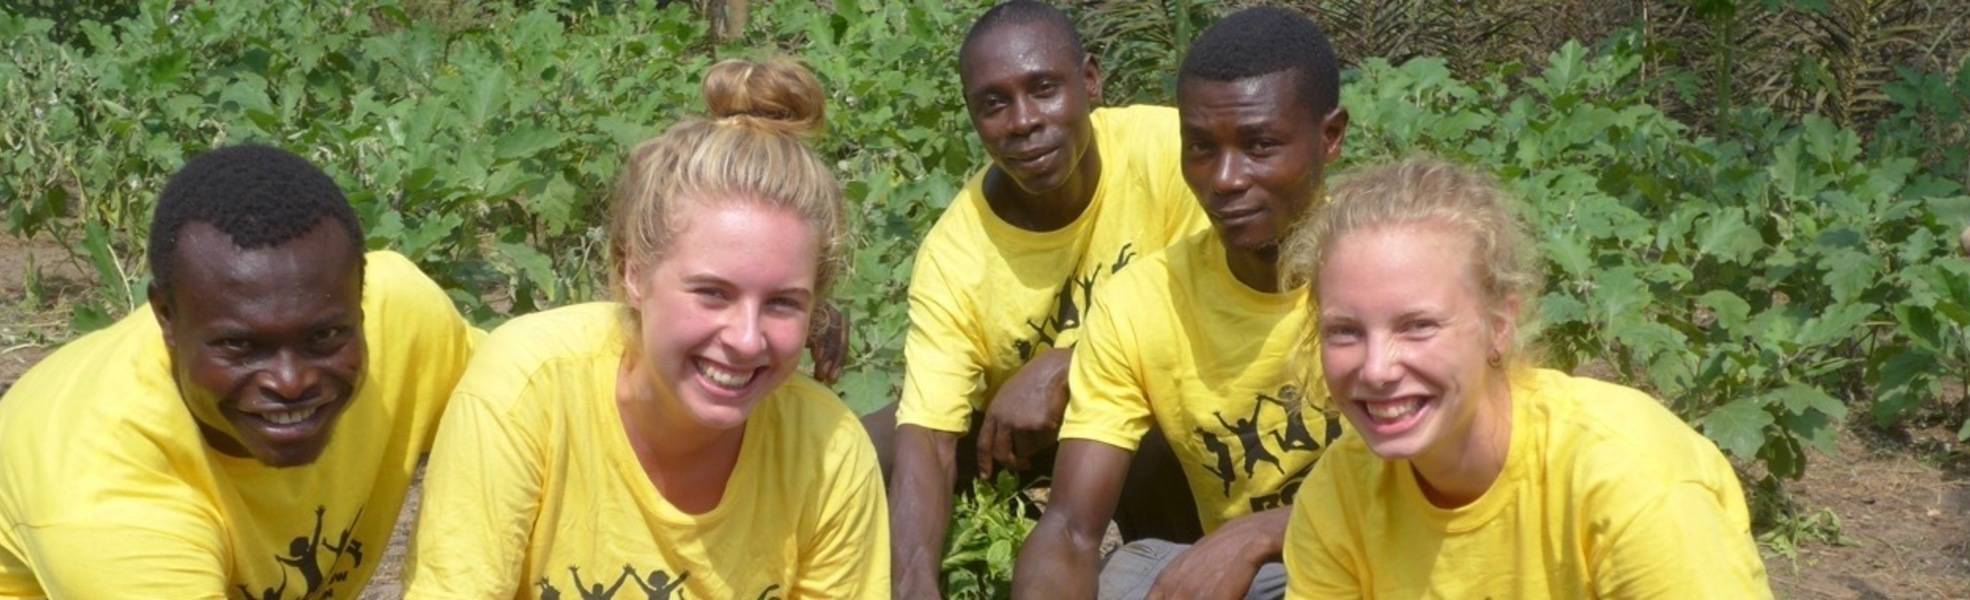 Volunteering in horticulture project in Ghana